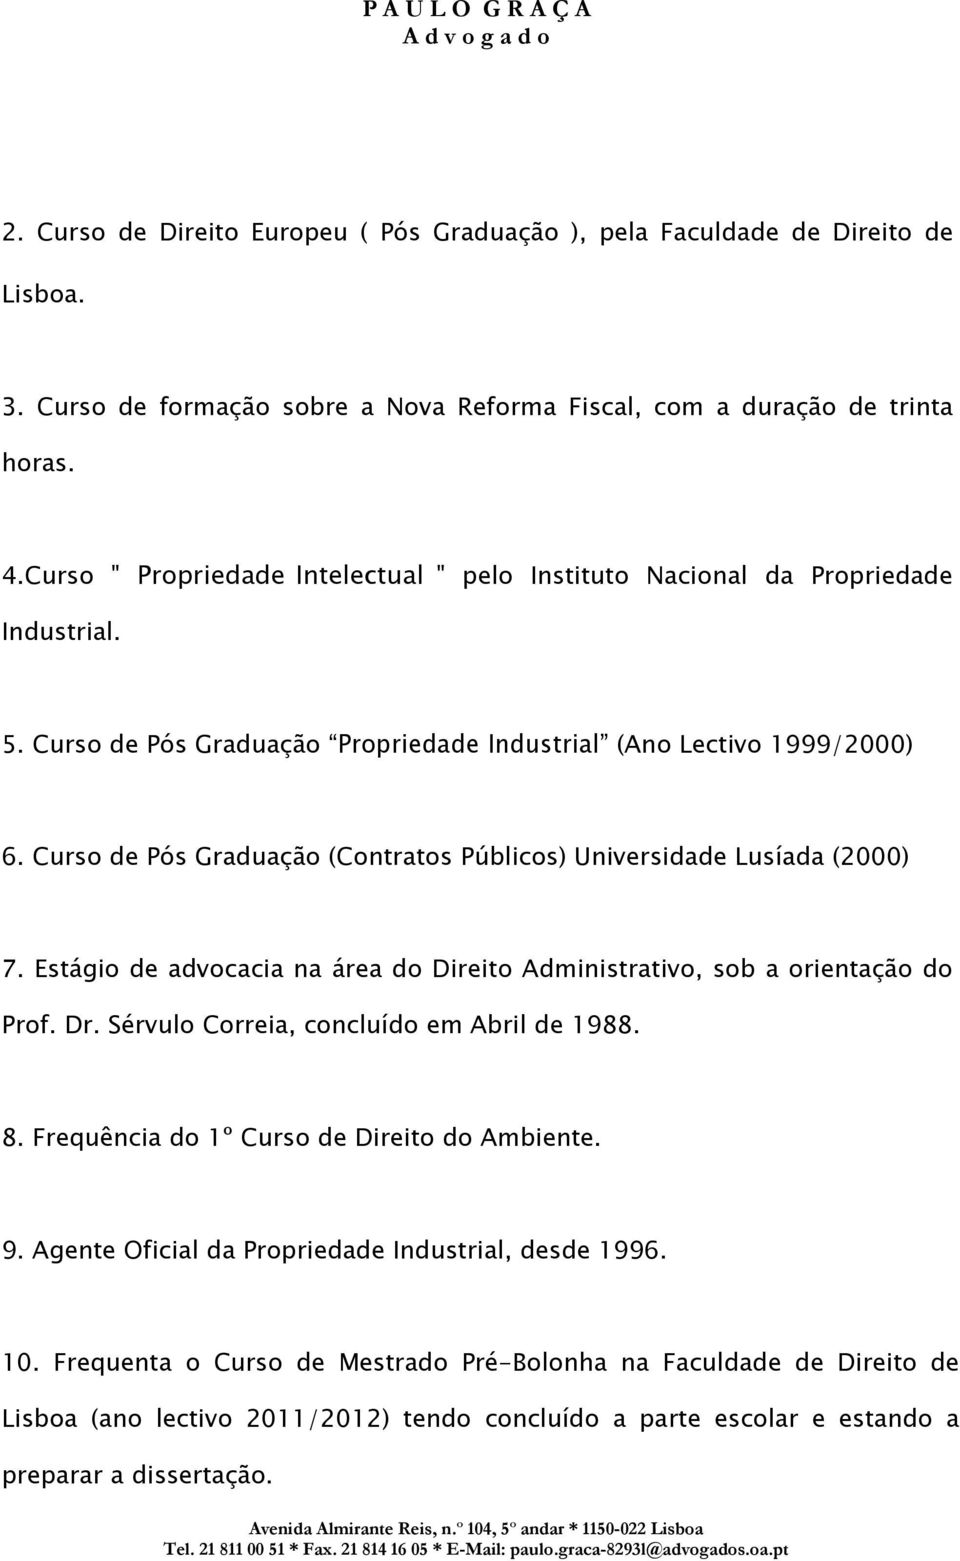 Curso de Pós Graduação (Contratos Públicos) Universidade Lusíada (2000) 7. Estágio de advocacia na área do Direito Administrativo, sob a orientação do Prof. Dr.